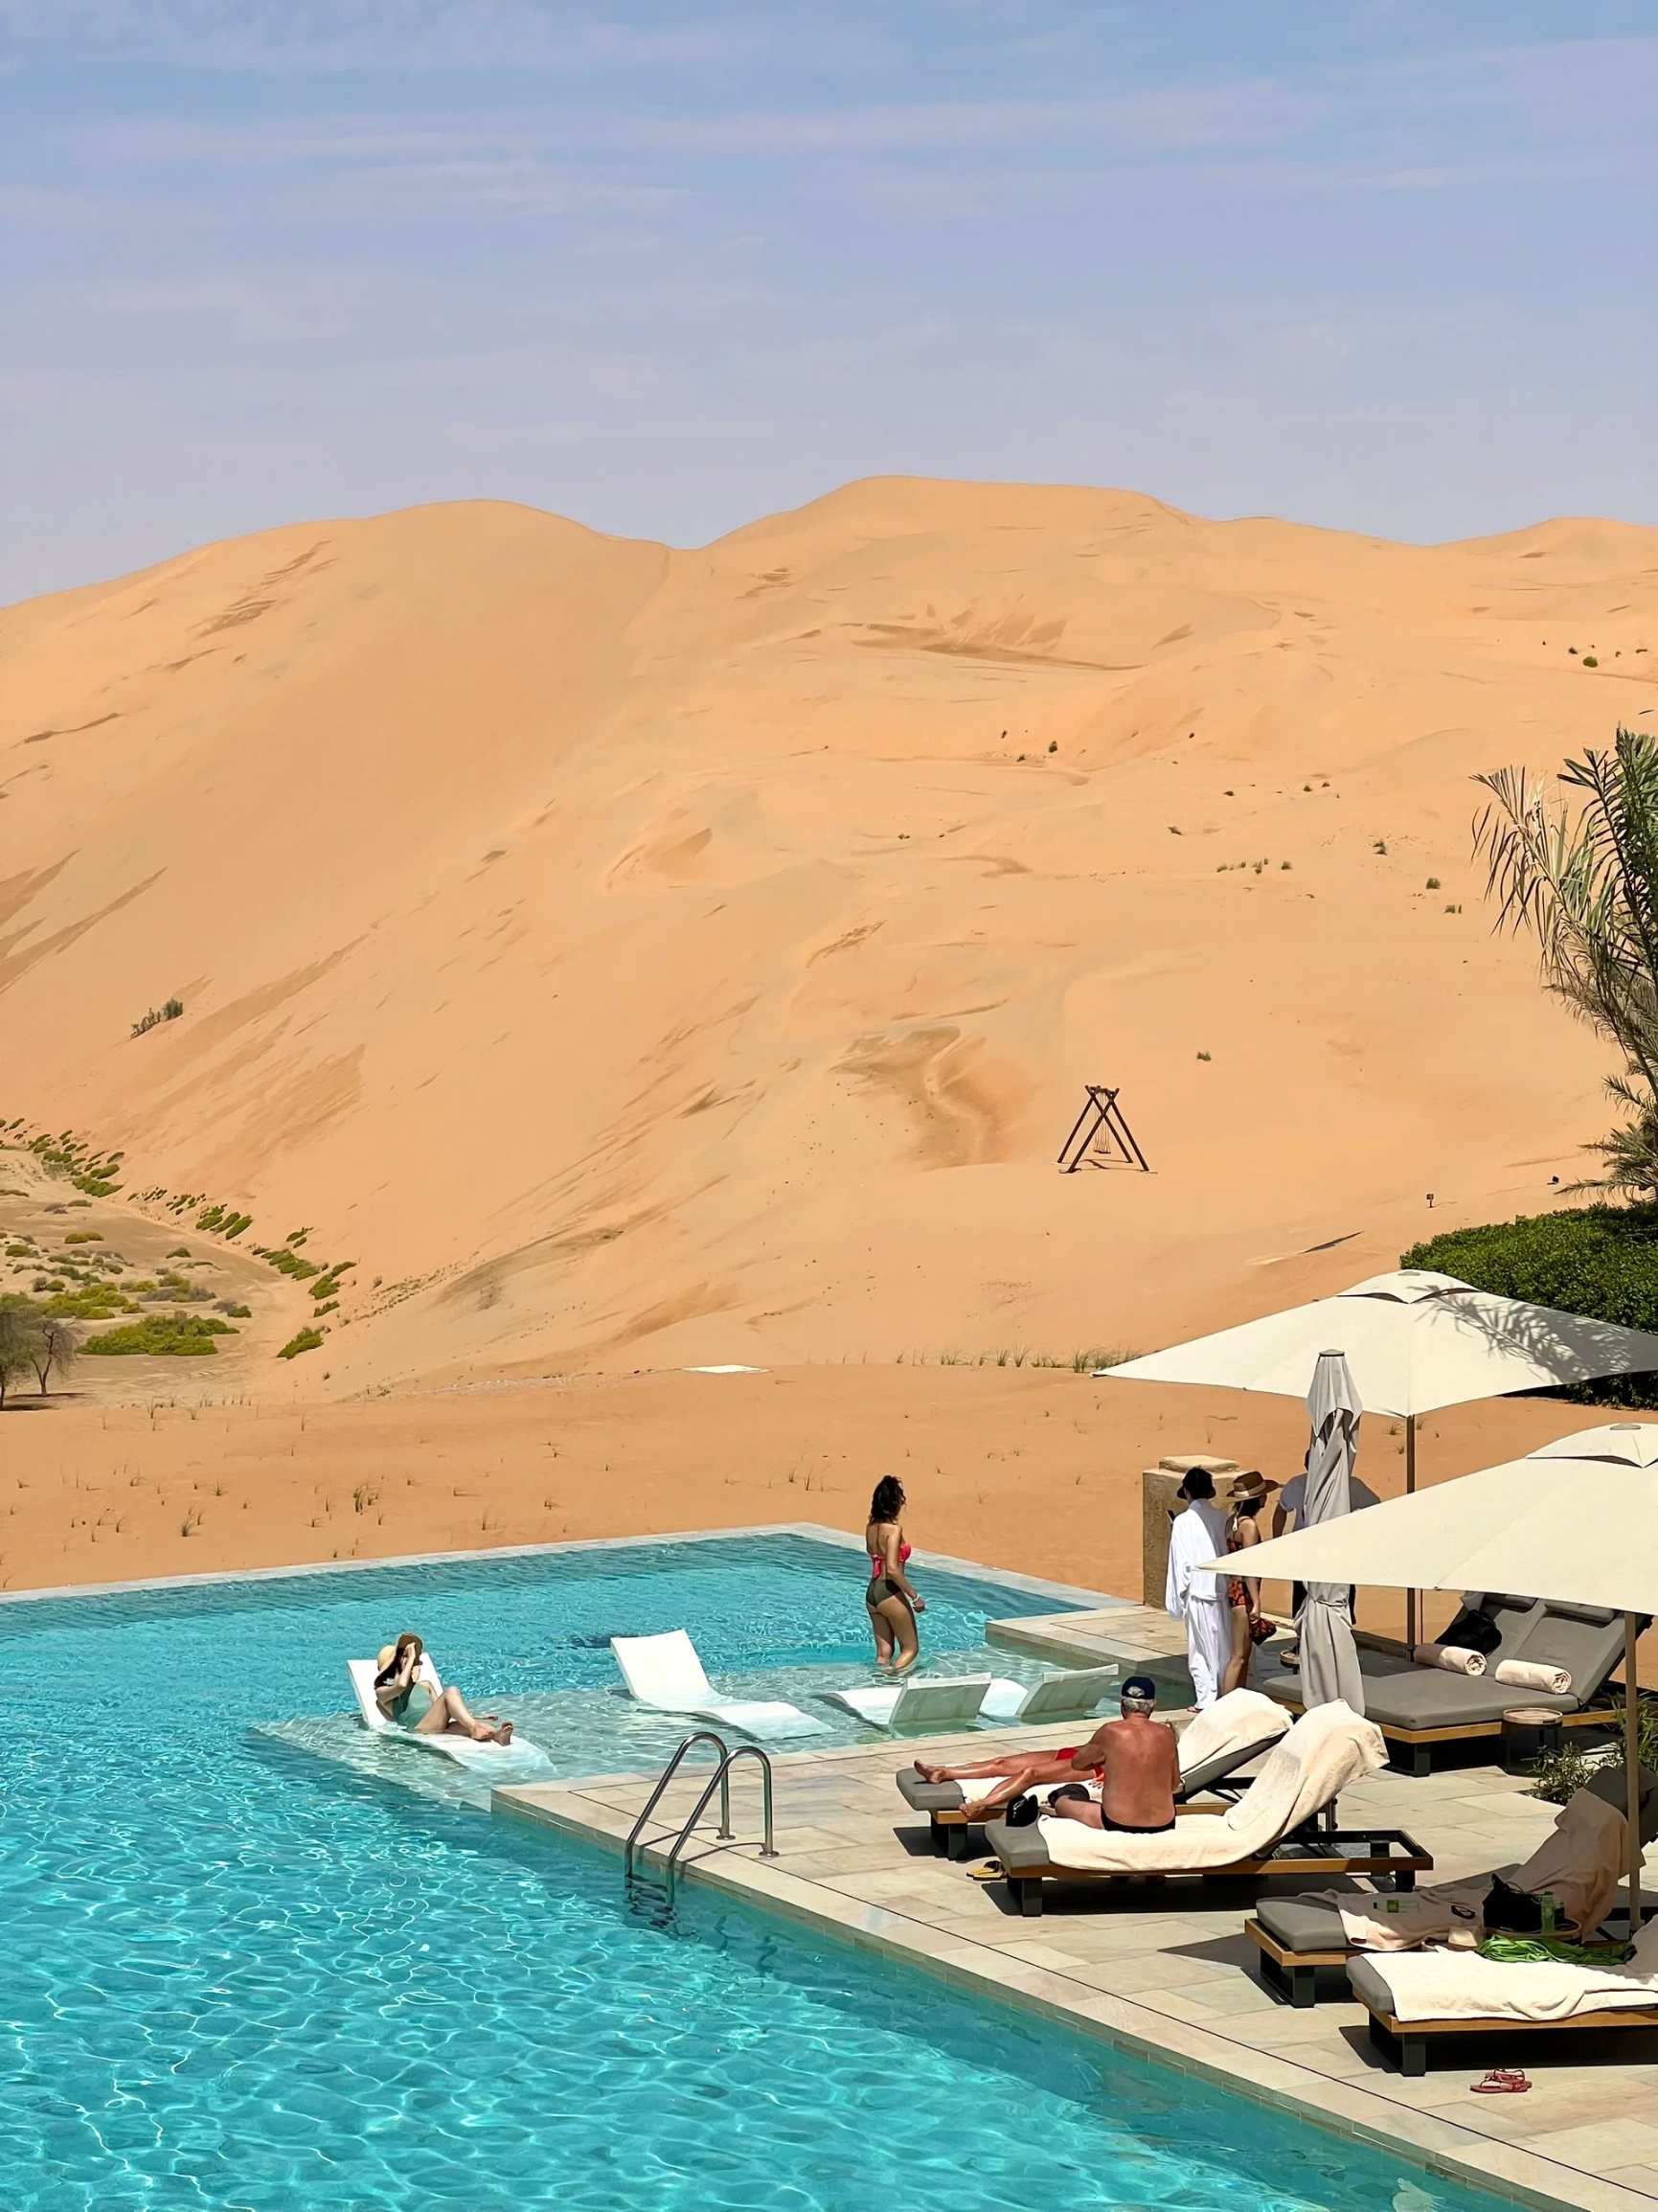 #沙漠之旅  没义务和你分享的沙漠酒店 只是觉得自己没有这个义务分享呀~ 《沙丘2》拍摄地王鹤棣同款